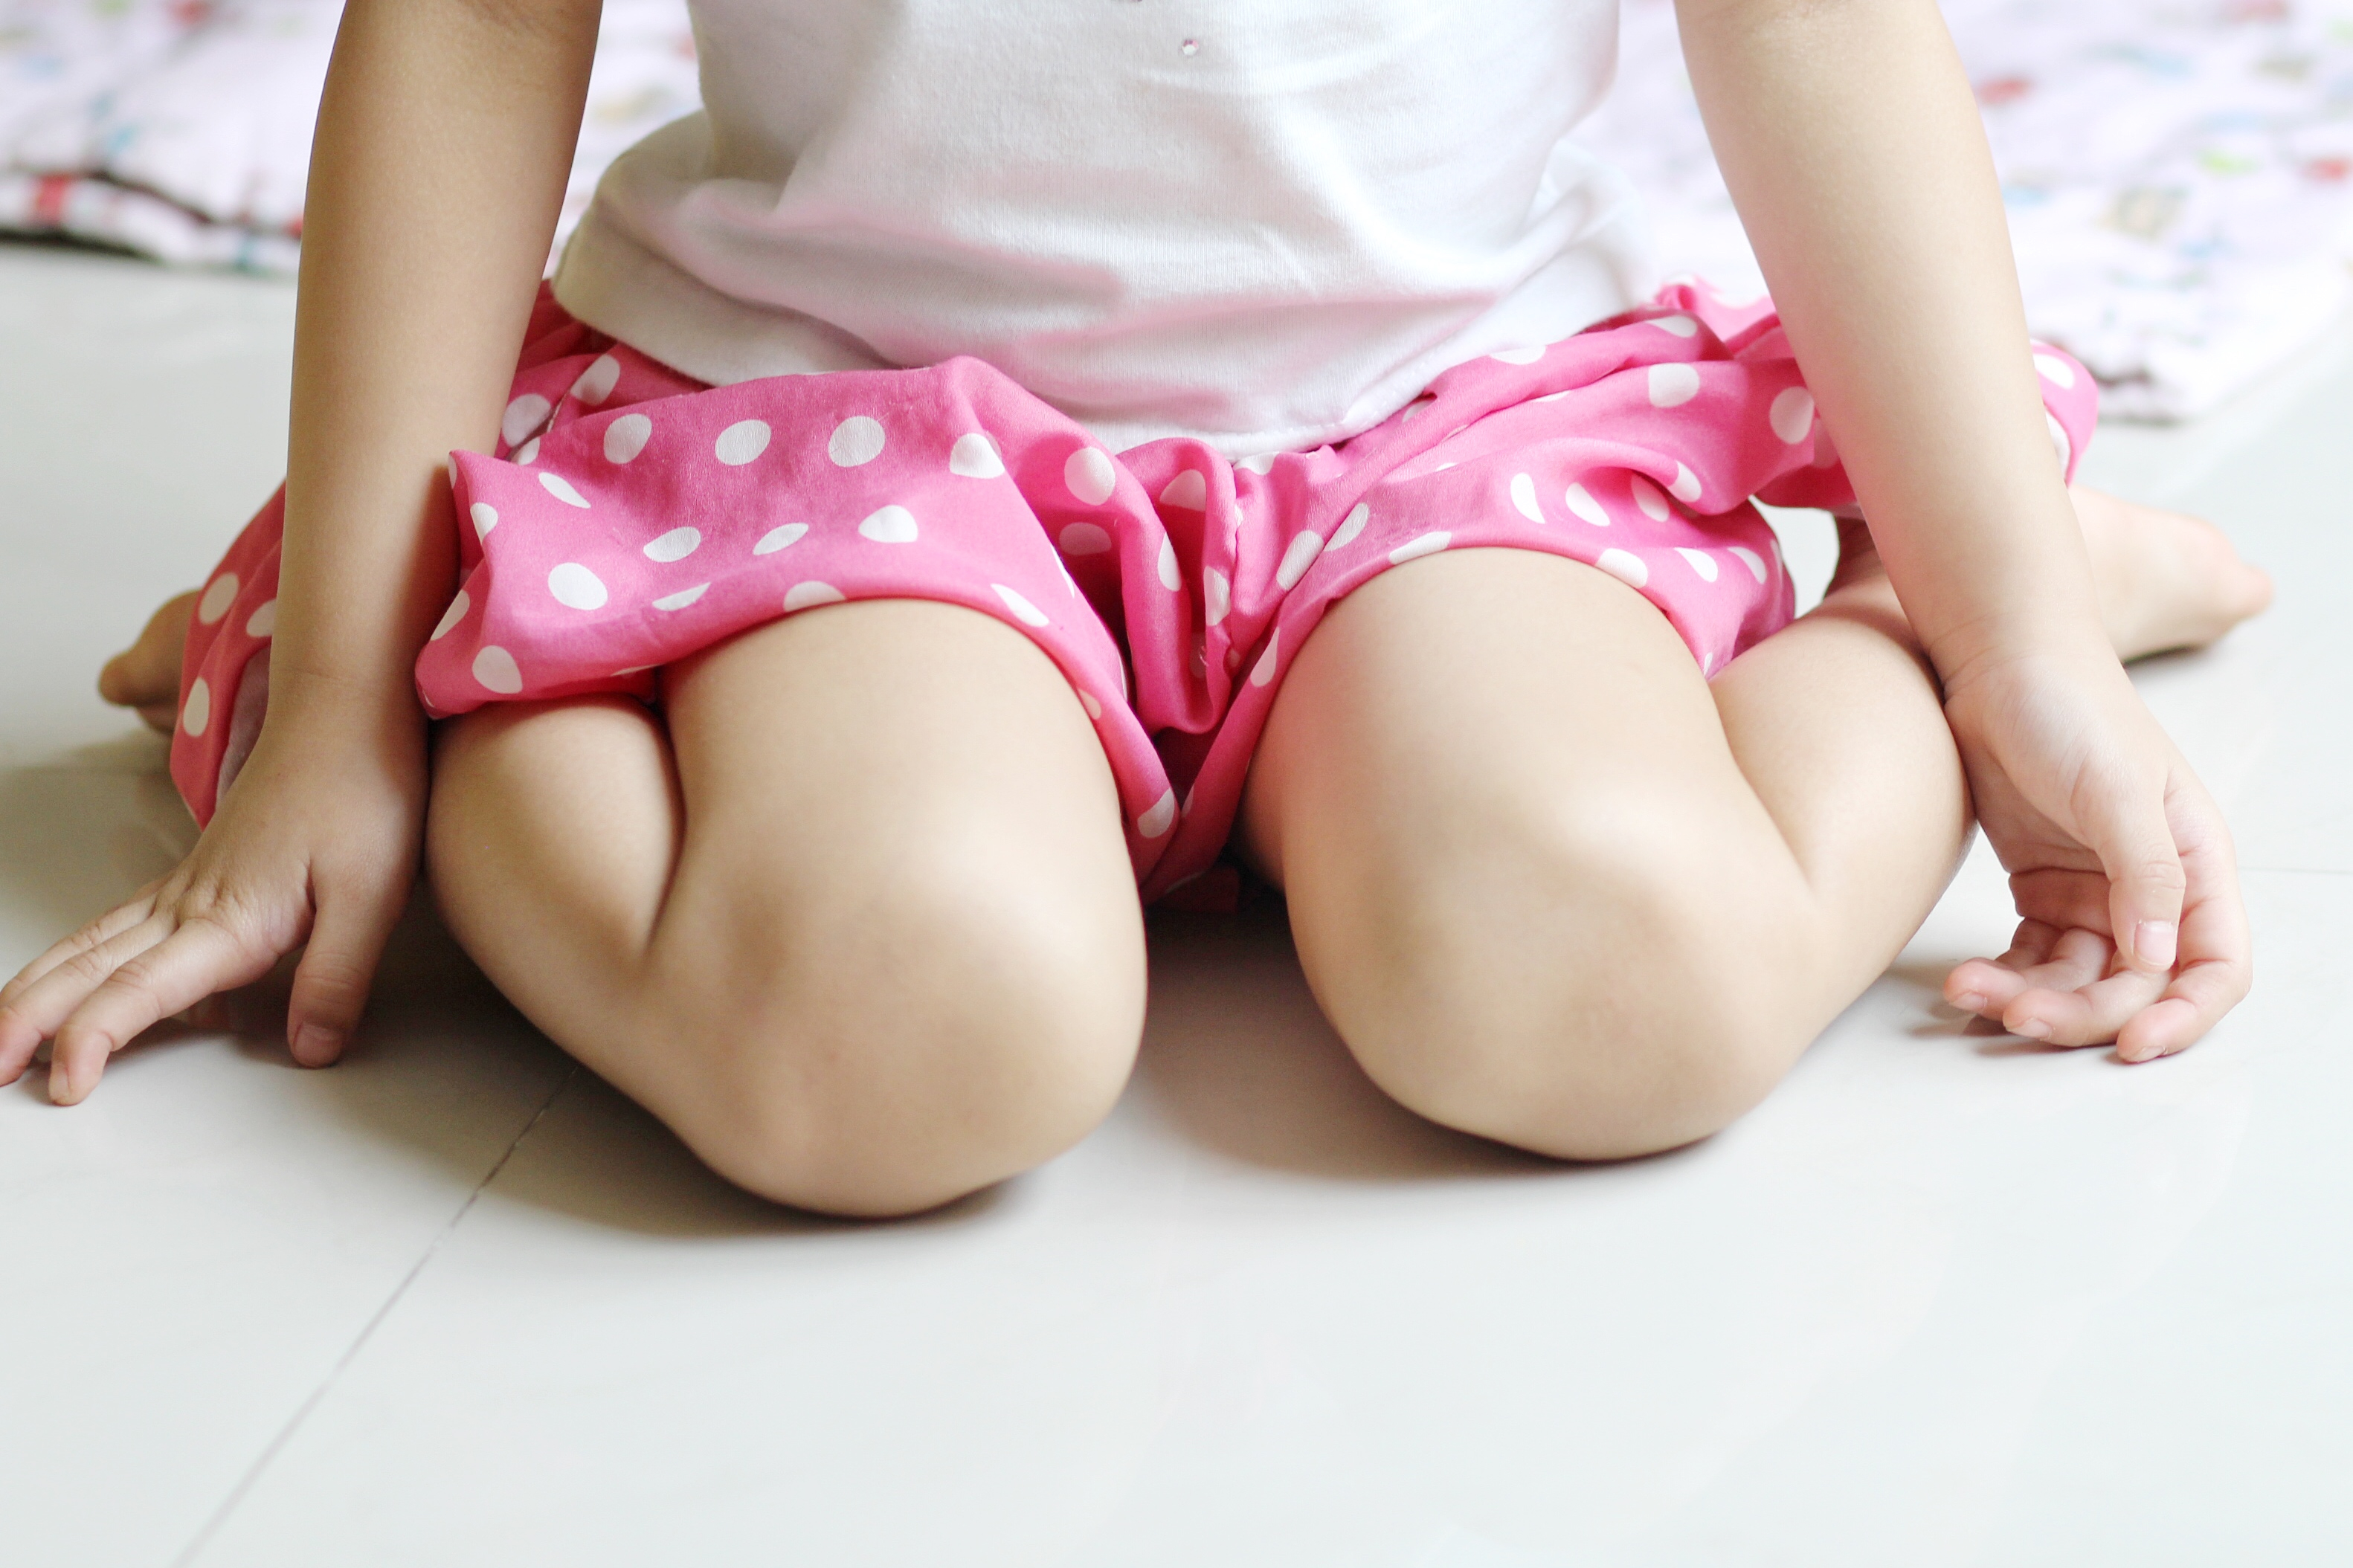 Sentarse en W es dañino para los niños porque aumenta la rigidez muscular y pone presión excesiva en las coyunturas de las caderas, rodillas, y tobillos. (Foto Prensa Libre: Shutterstock)